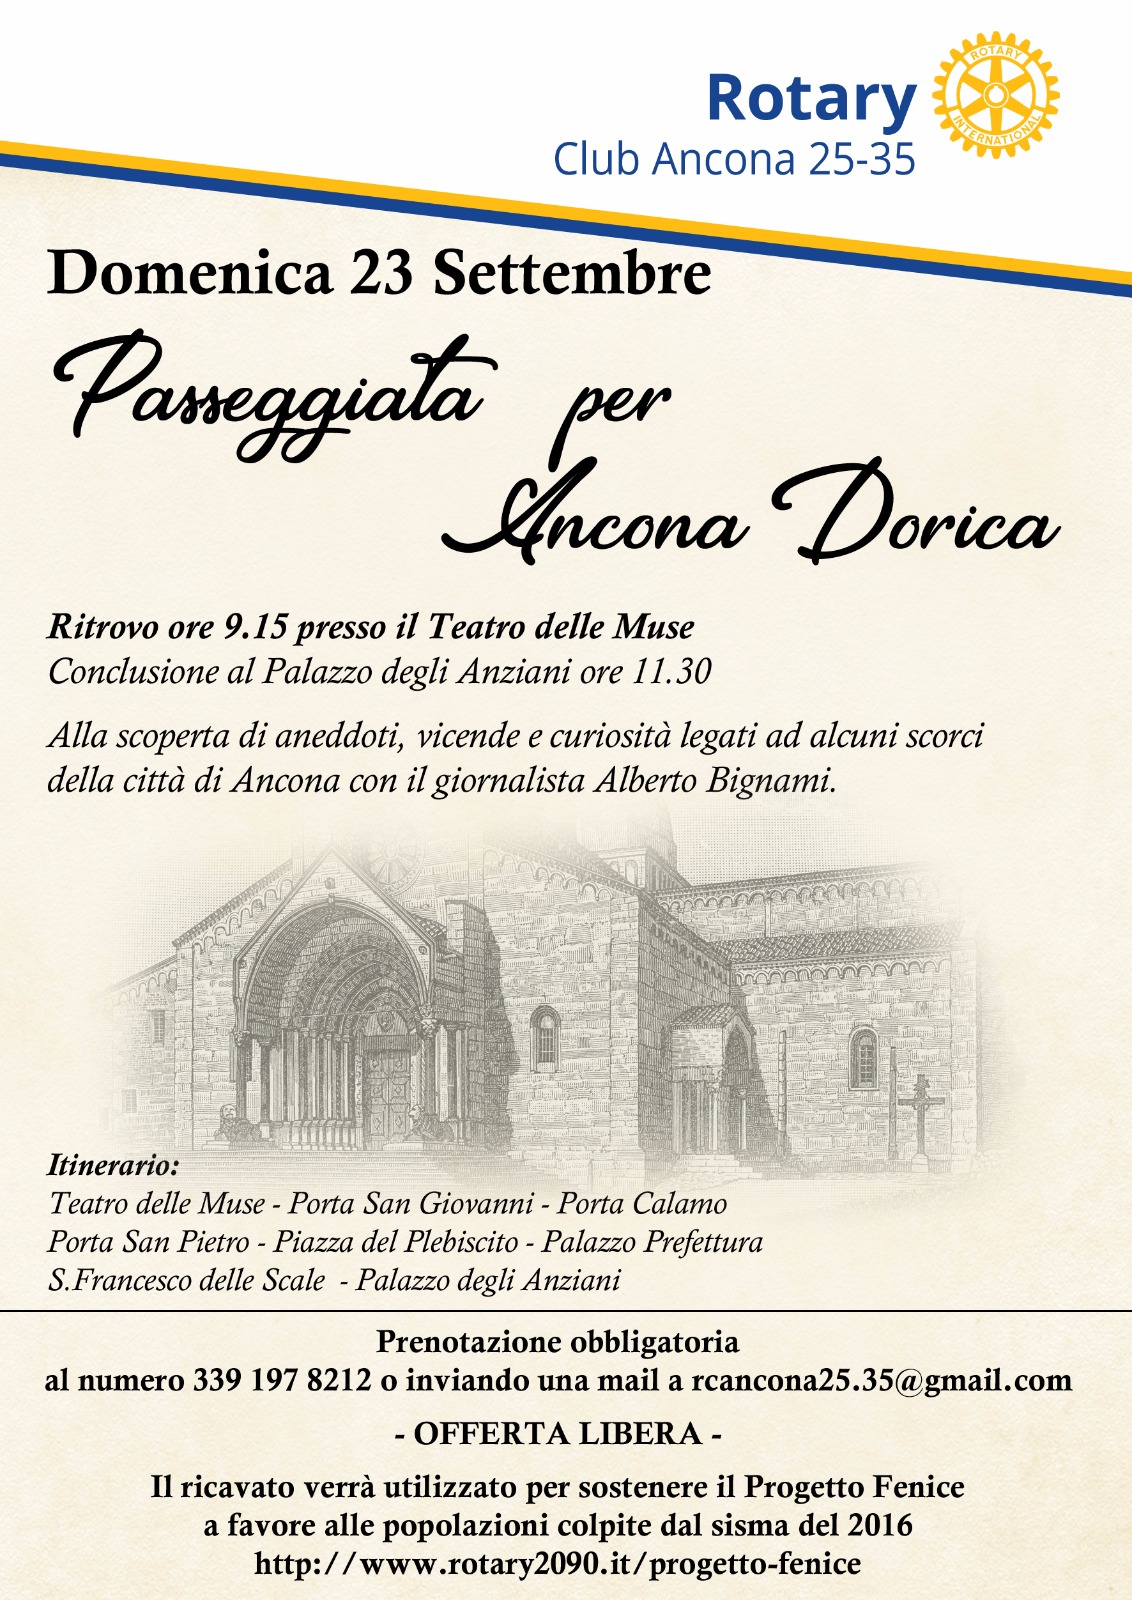 Miniatura per l'articolo intitolato:Passeggiata per Ancona Dorica a favore del Progetto Fenice